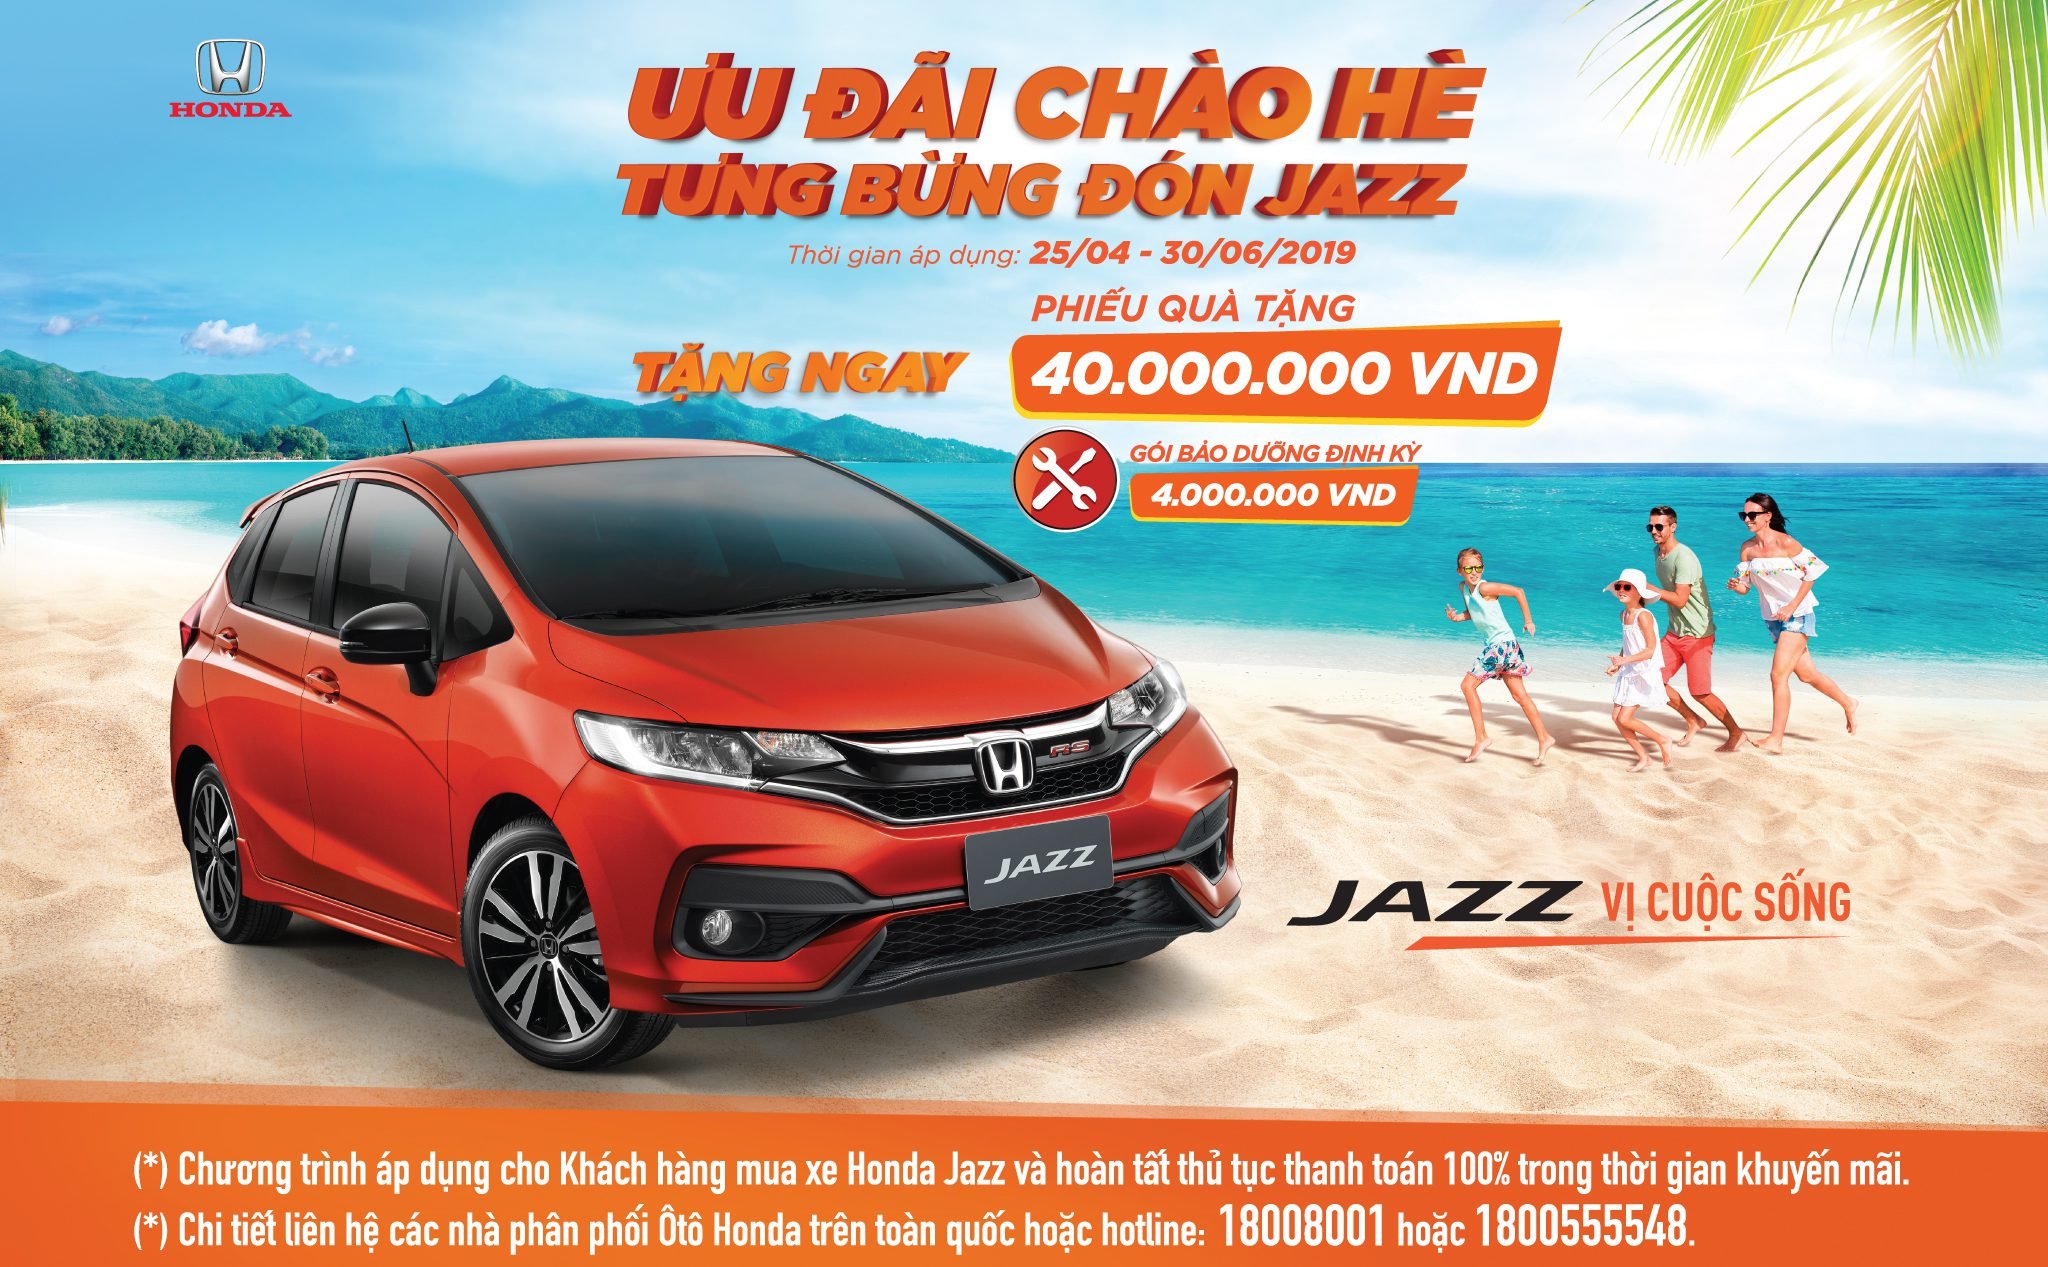 [QC] Honda Việt Nam triển khai chương trình khuyến mại “Ưu đãi chào hè, tưng bừng đón Jazz”